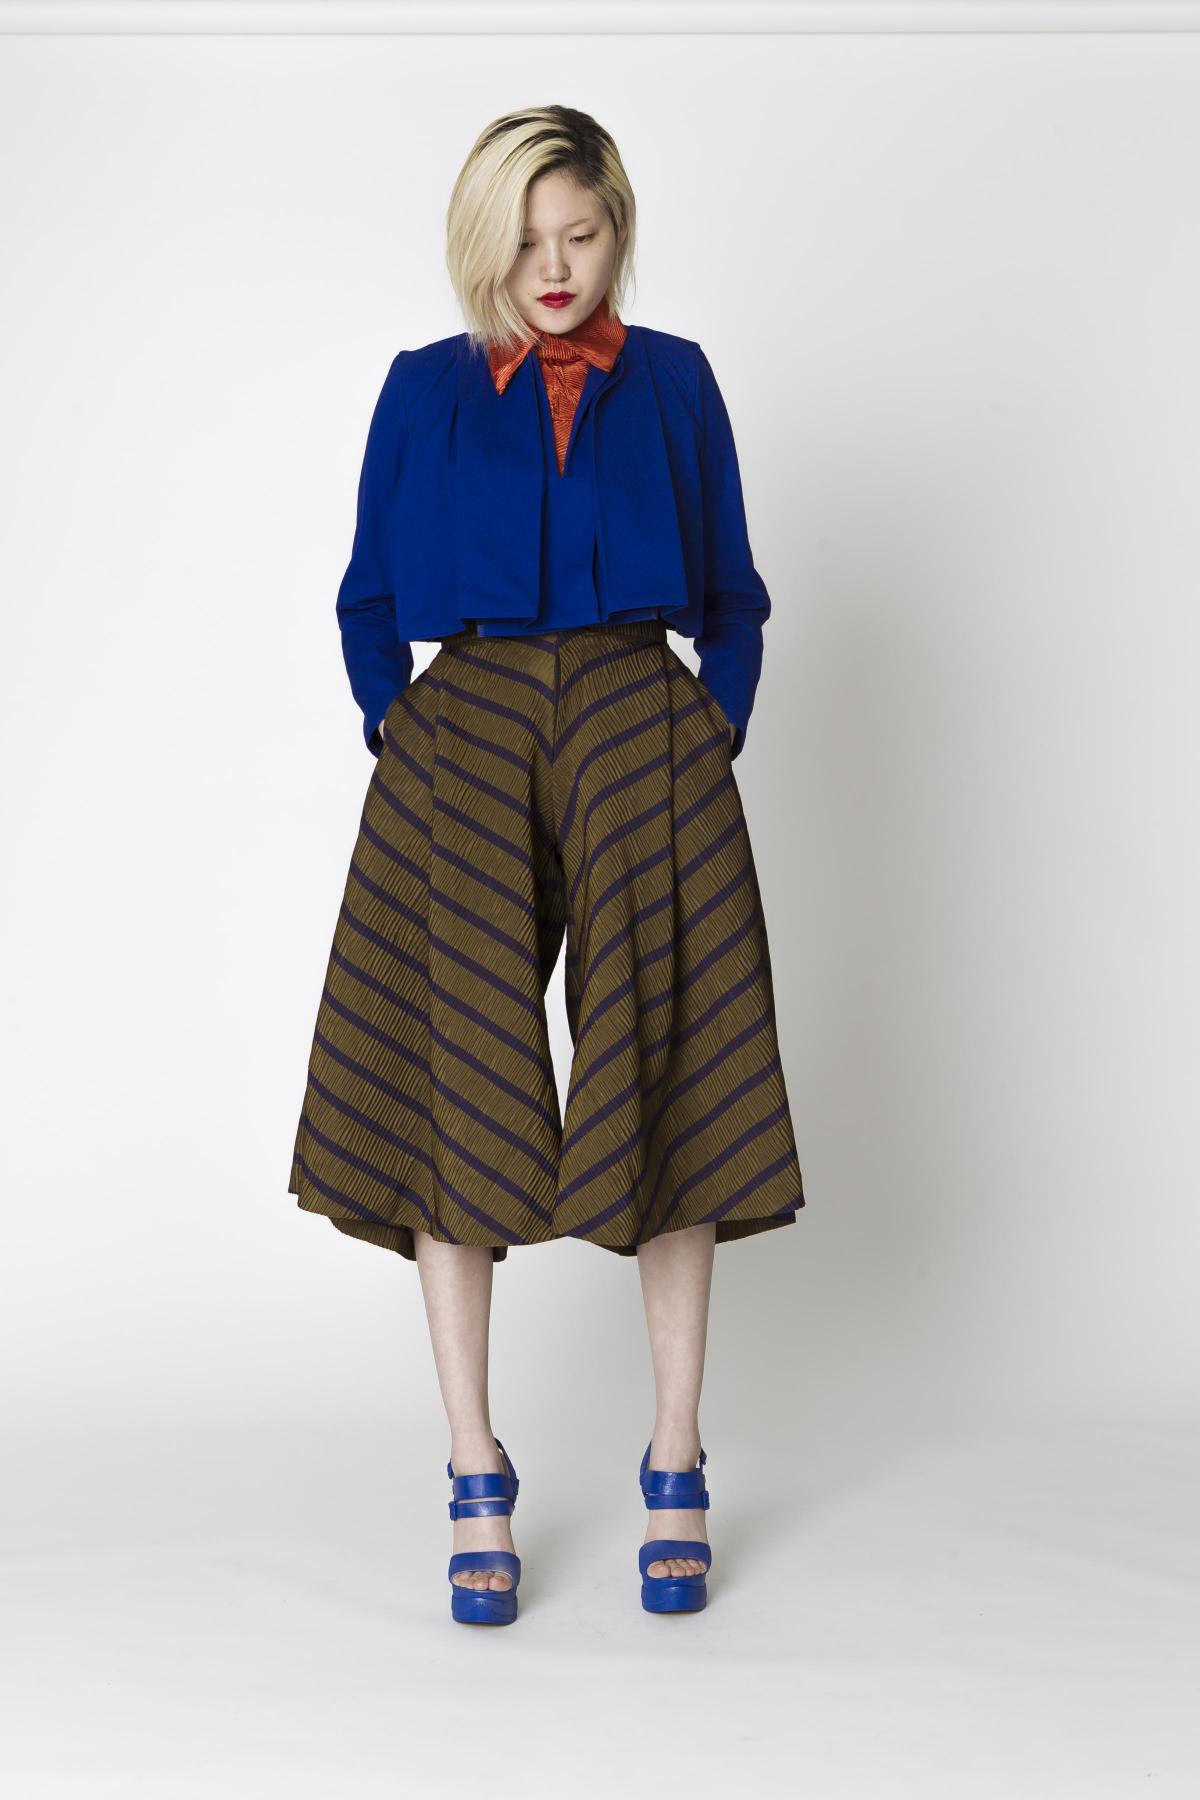 Joanna Karmowska Fashion Design Womenswear